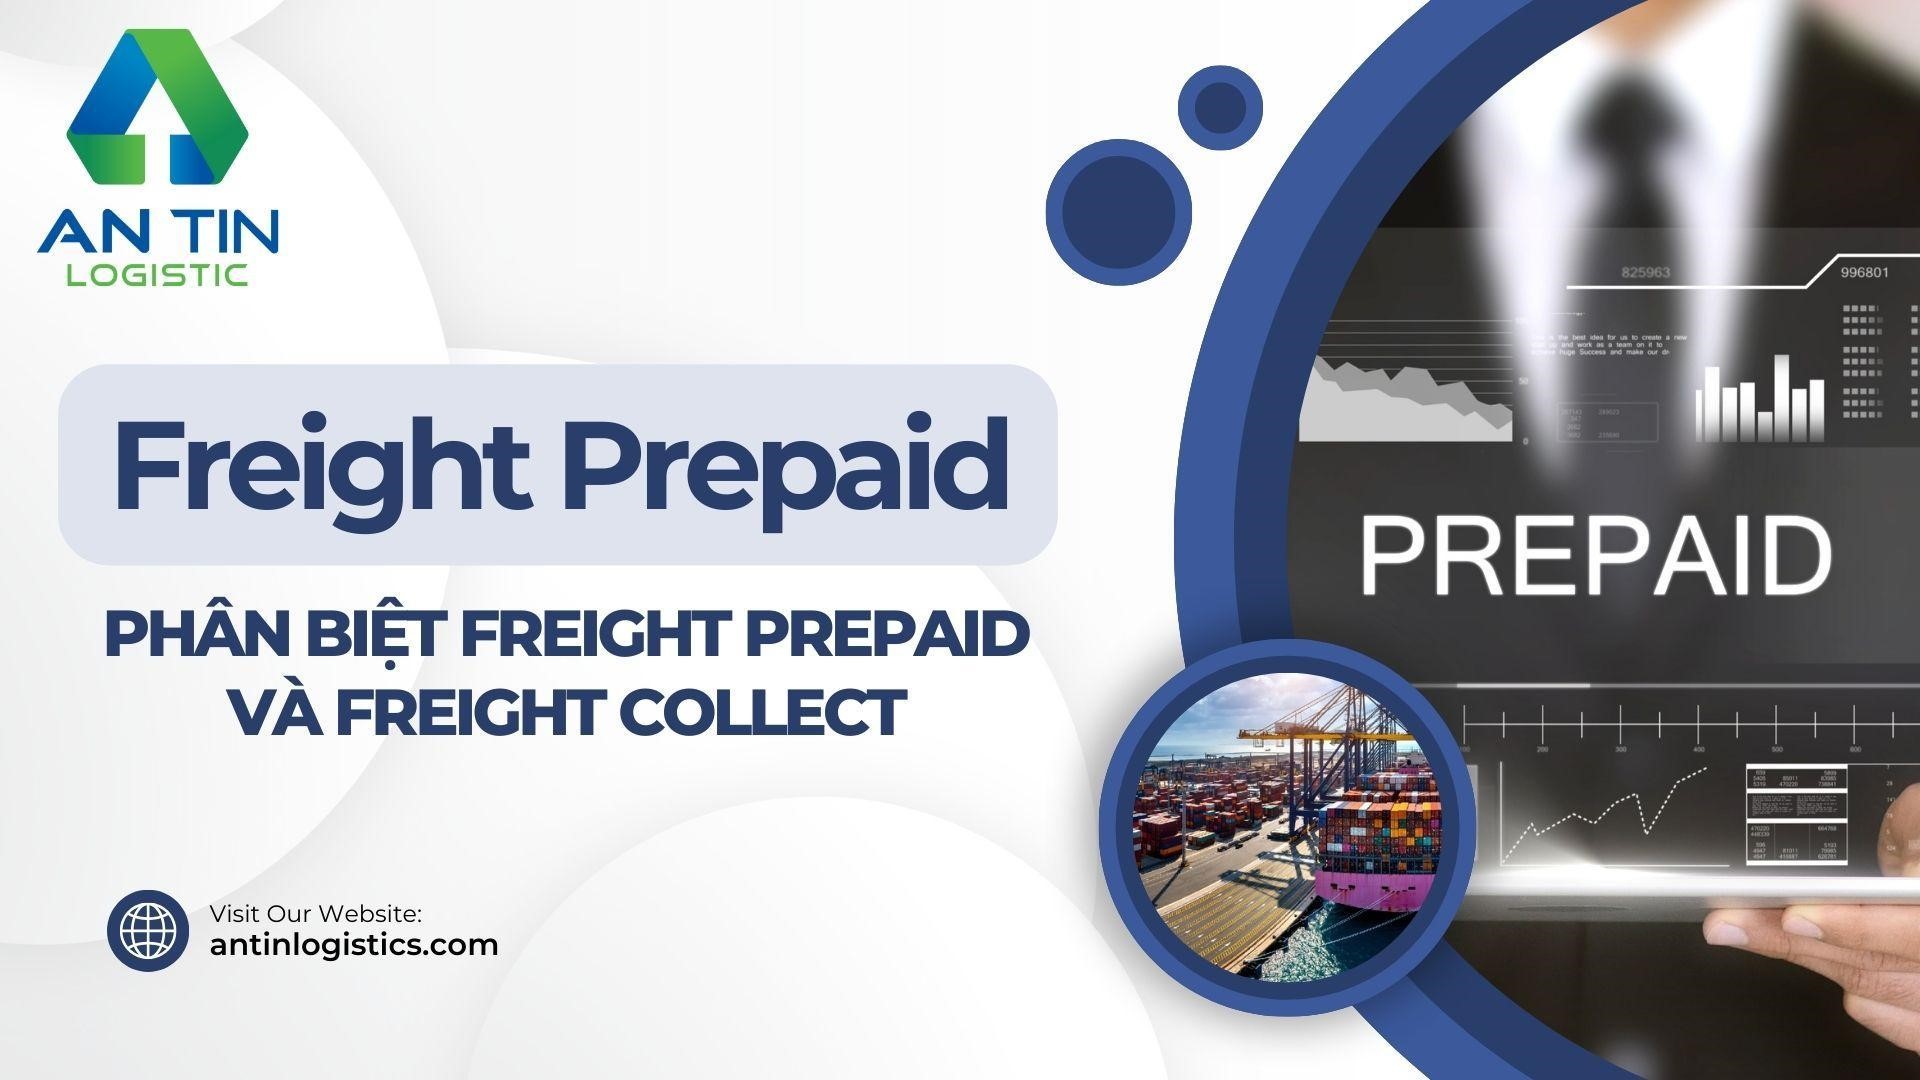 Freight Prepaid là gì?